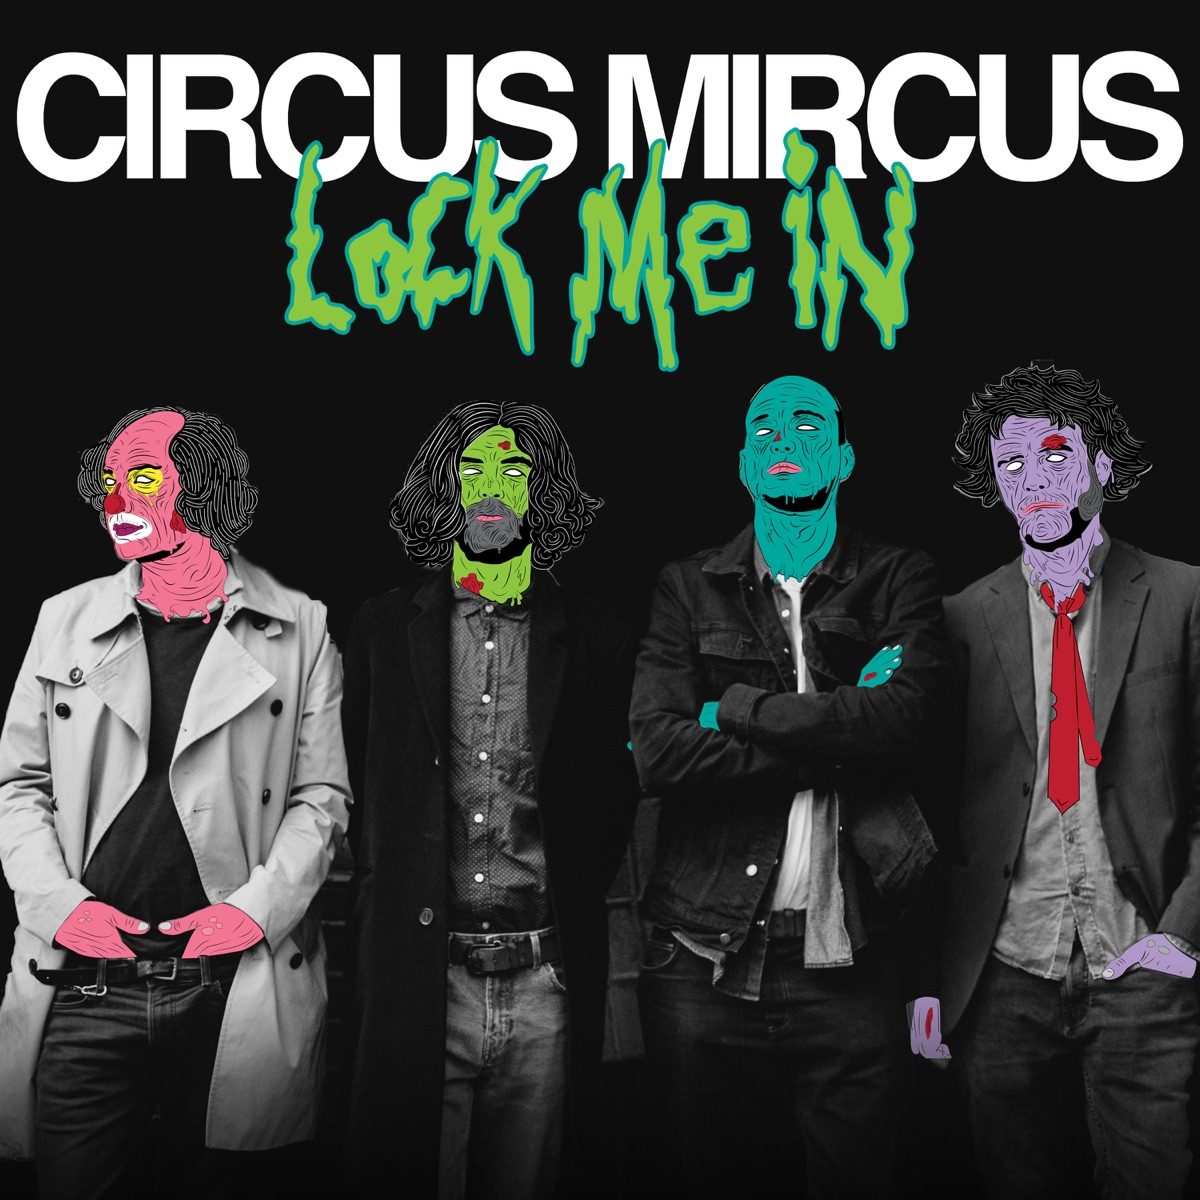 circus mircus